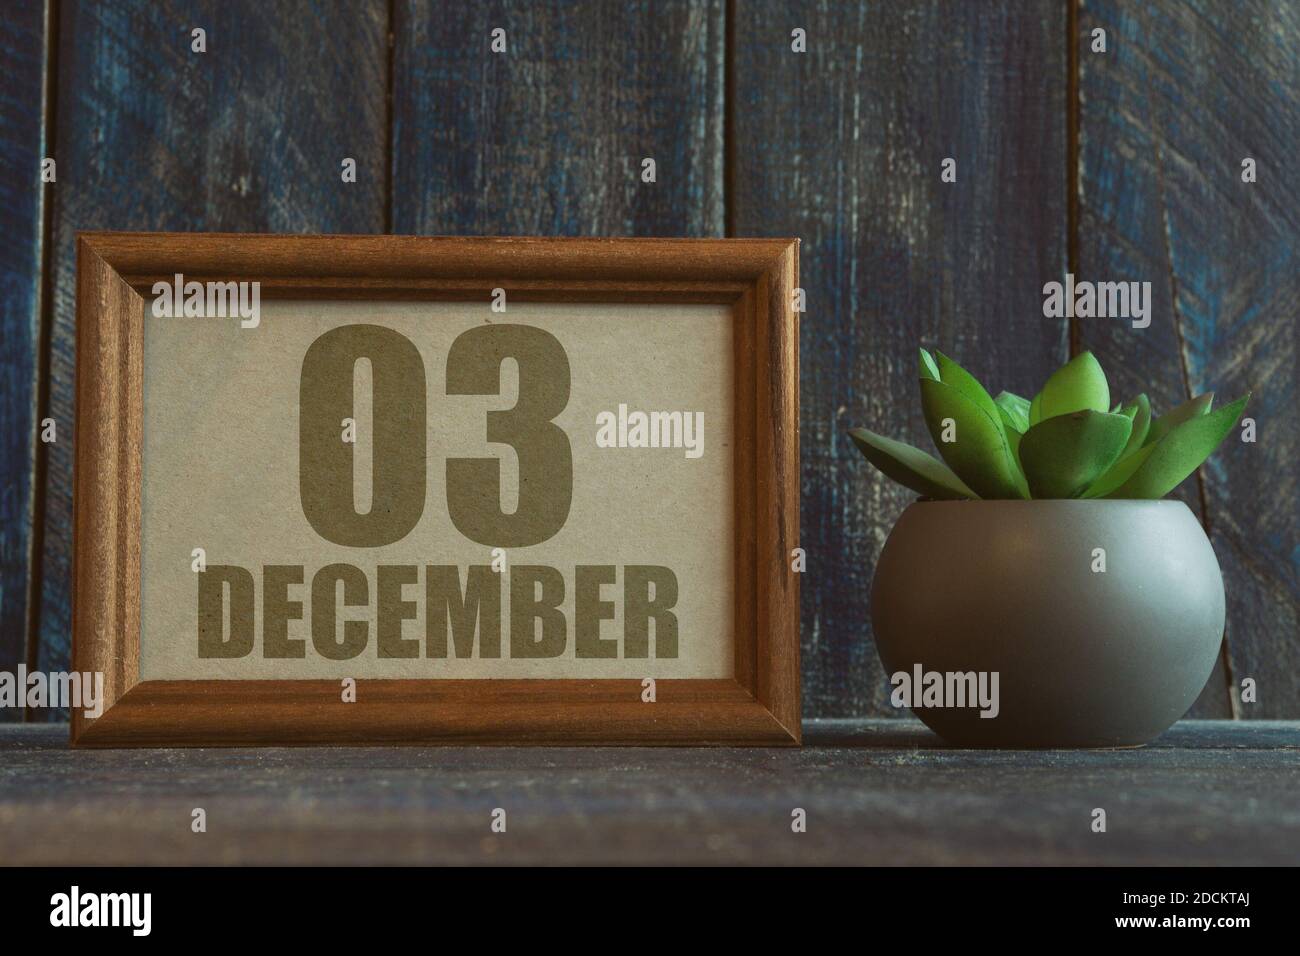 dezember. Tag 3 des Monats, Datum im Rahmen neben Sukkulenten auf Holzhintergrund Wintermonat, Tag des Jahres Konzept. Stockfoto